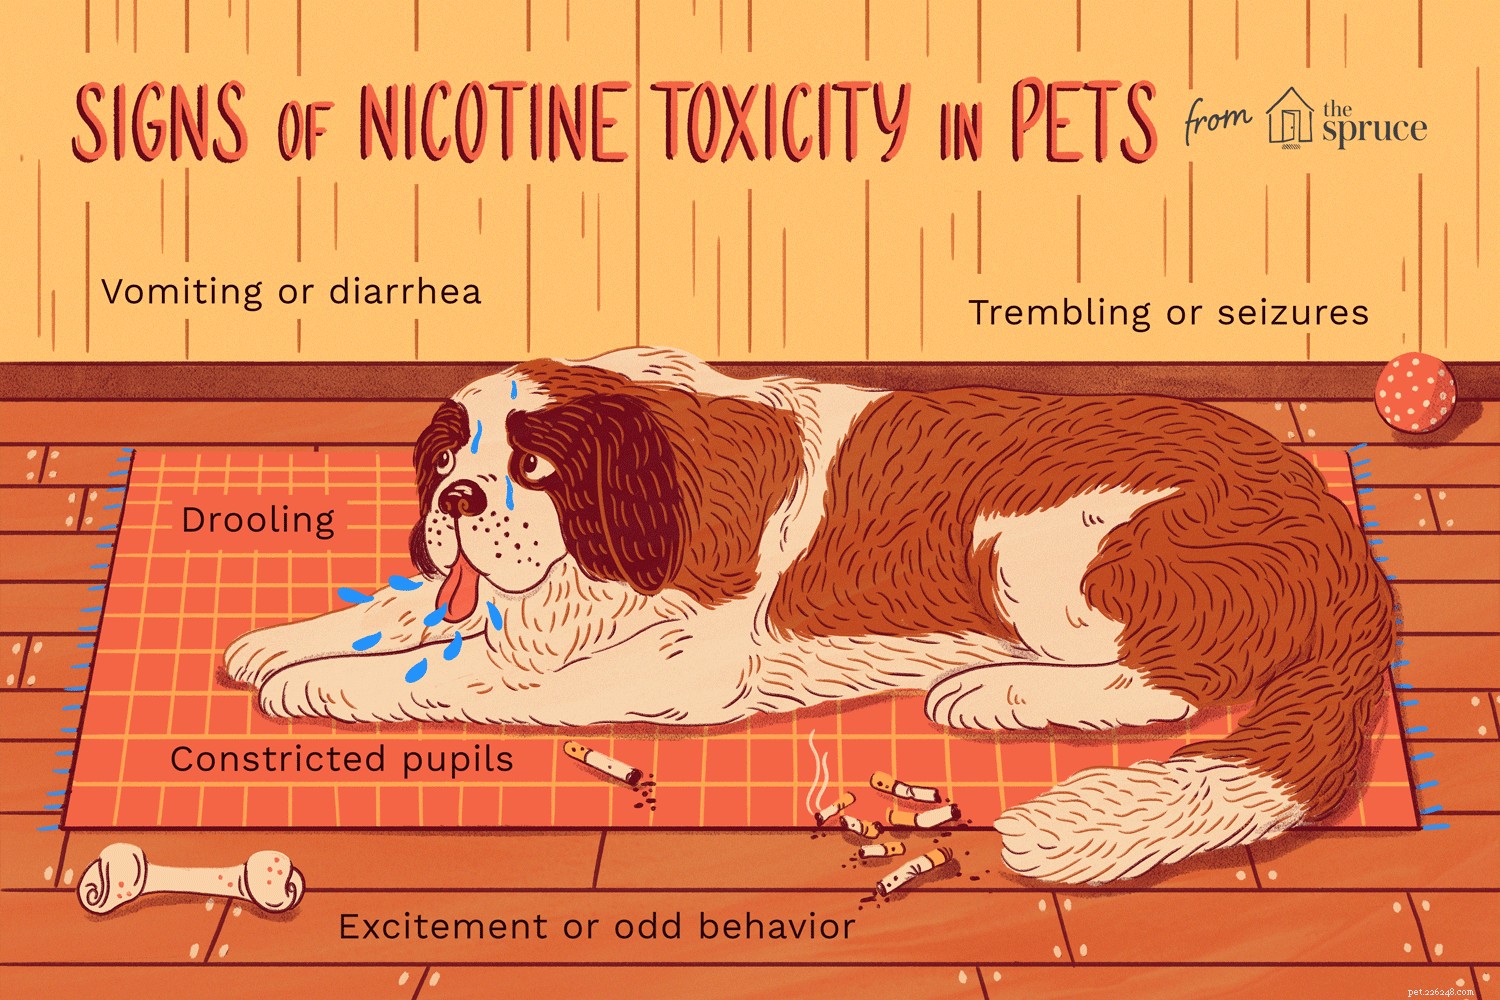 애완동물의 니코틴 중독